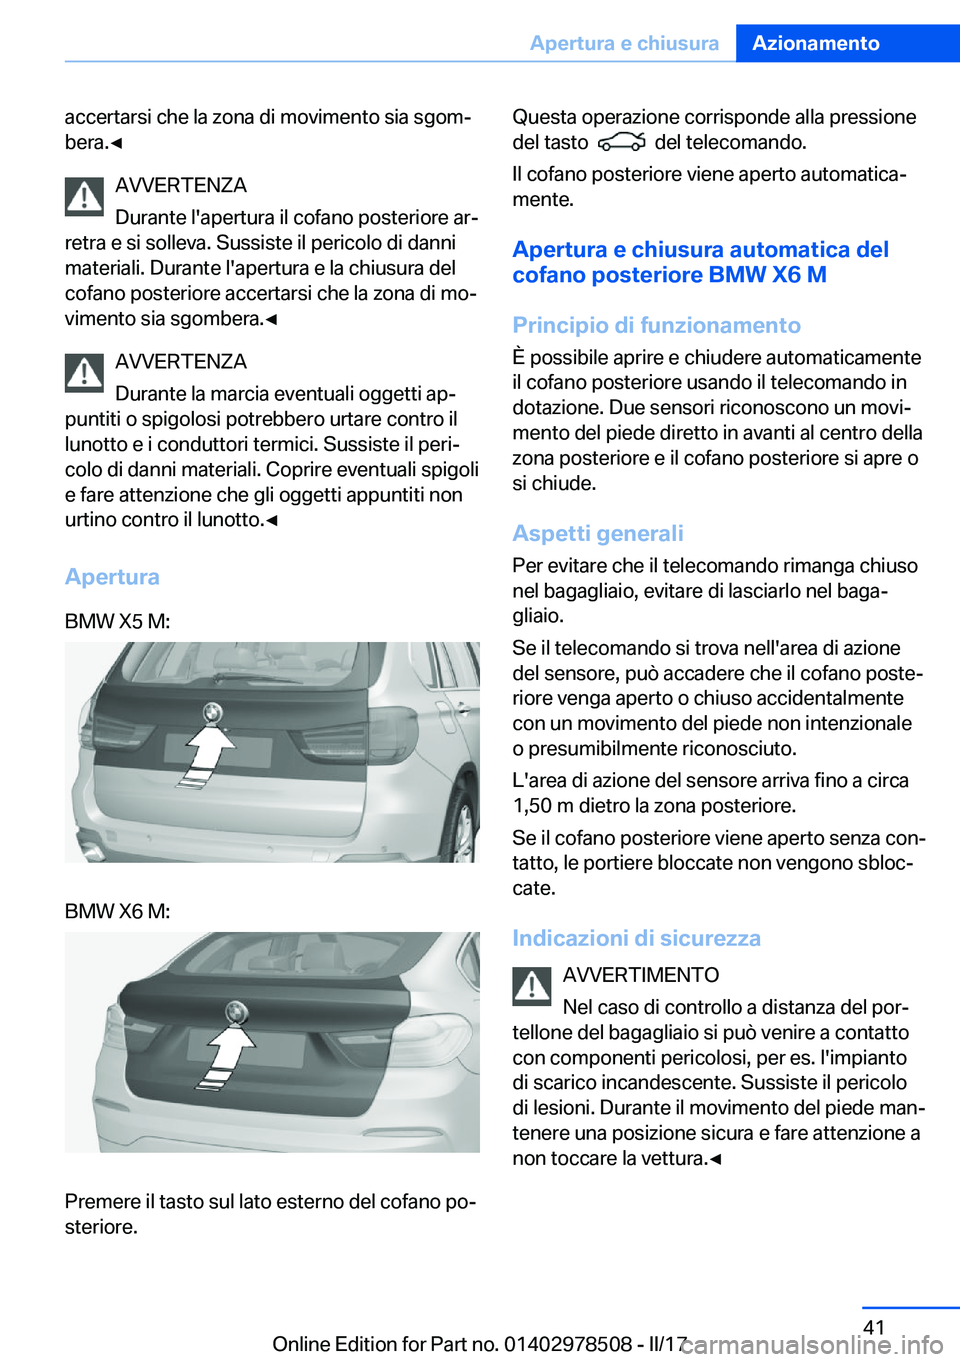 BMW X6 M 2017  Libretti Di Uso E manutenzione (in Italian) �a�c�c�e�r�t�a�r�s�i� �c�h�e� �l�a� �z�o�n�a� �d�i� �m�o�v�i�m�e�n�t�o� �s�i�a� �s�g�o�mª
�b�e�r�a�.'